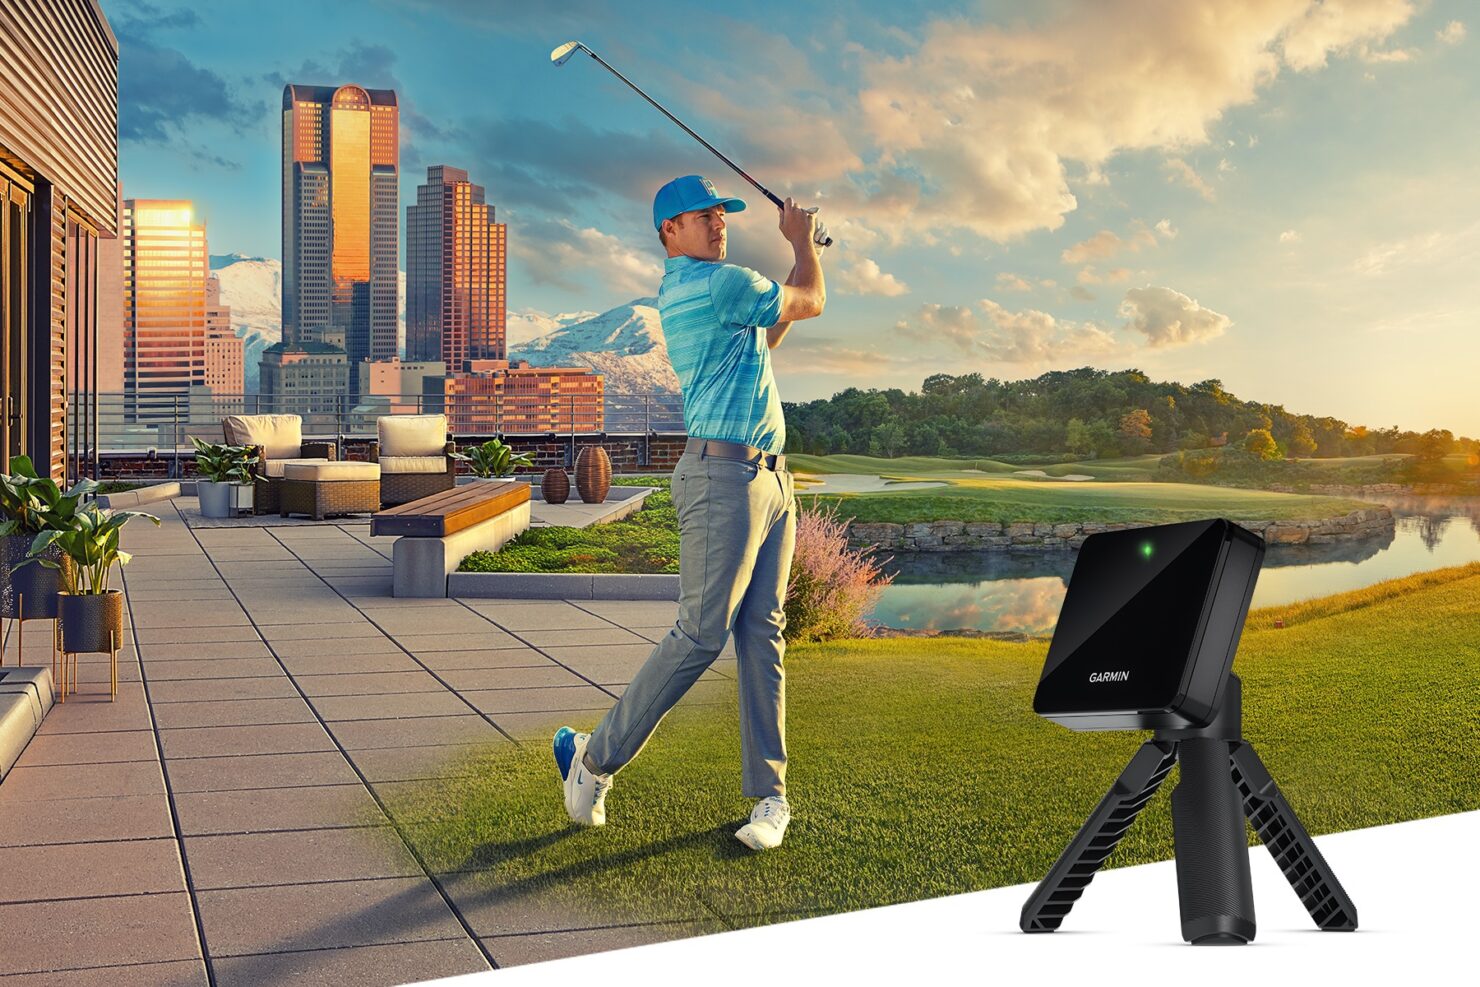 Garmin announces Approach R10 portable golf launch monitor.